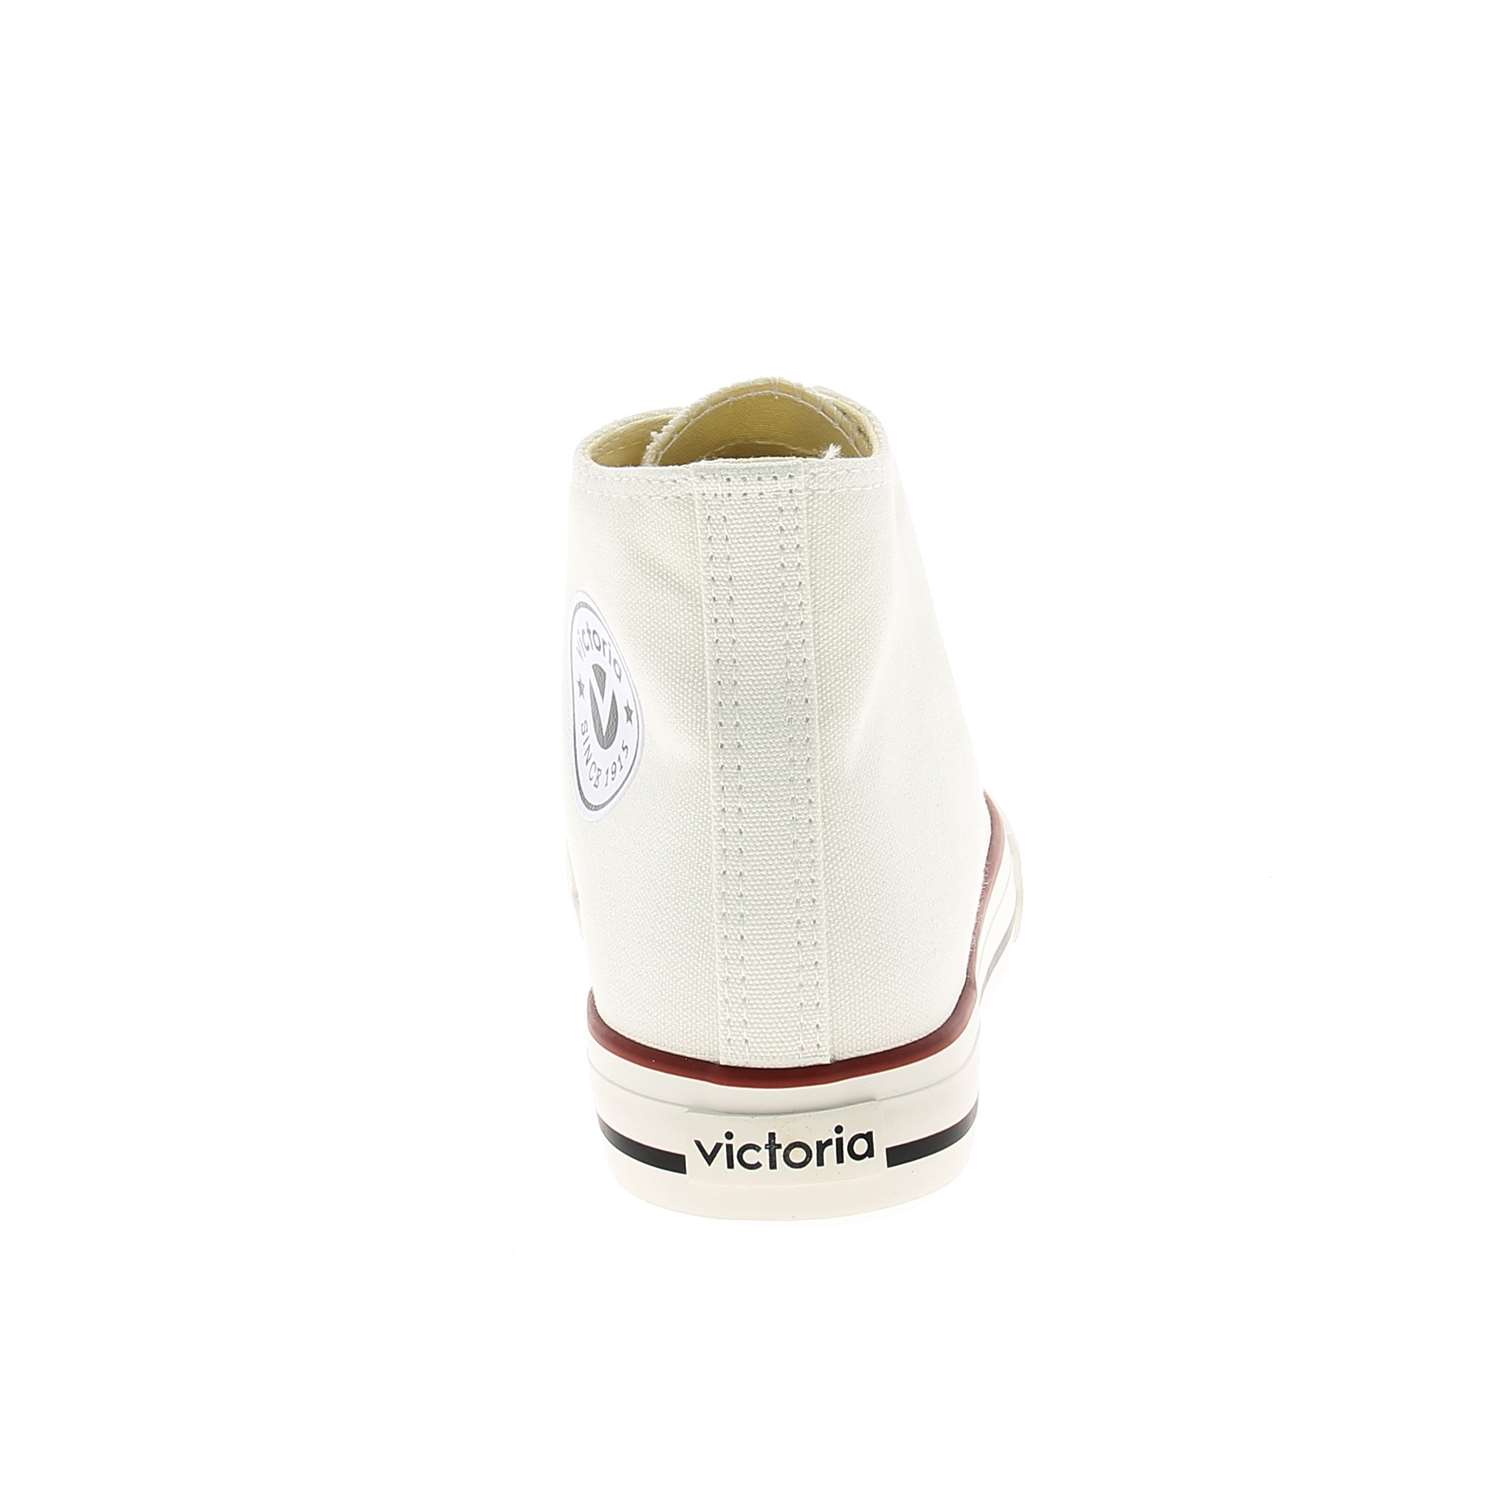 04 - TRIBU BOTIN - VICTORIA  - Chaussures à lacets - Textile